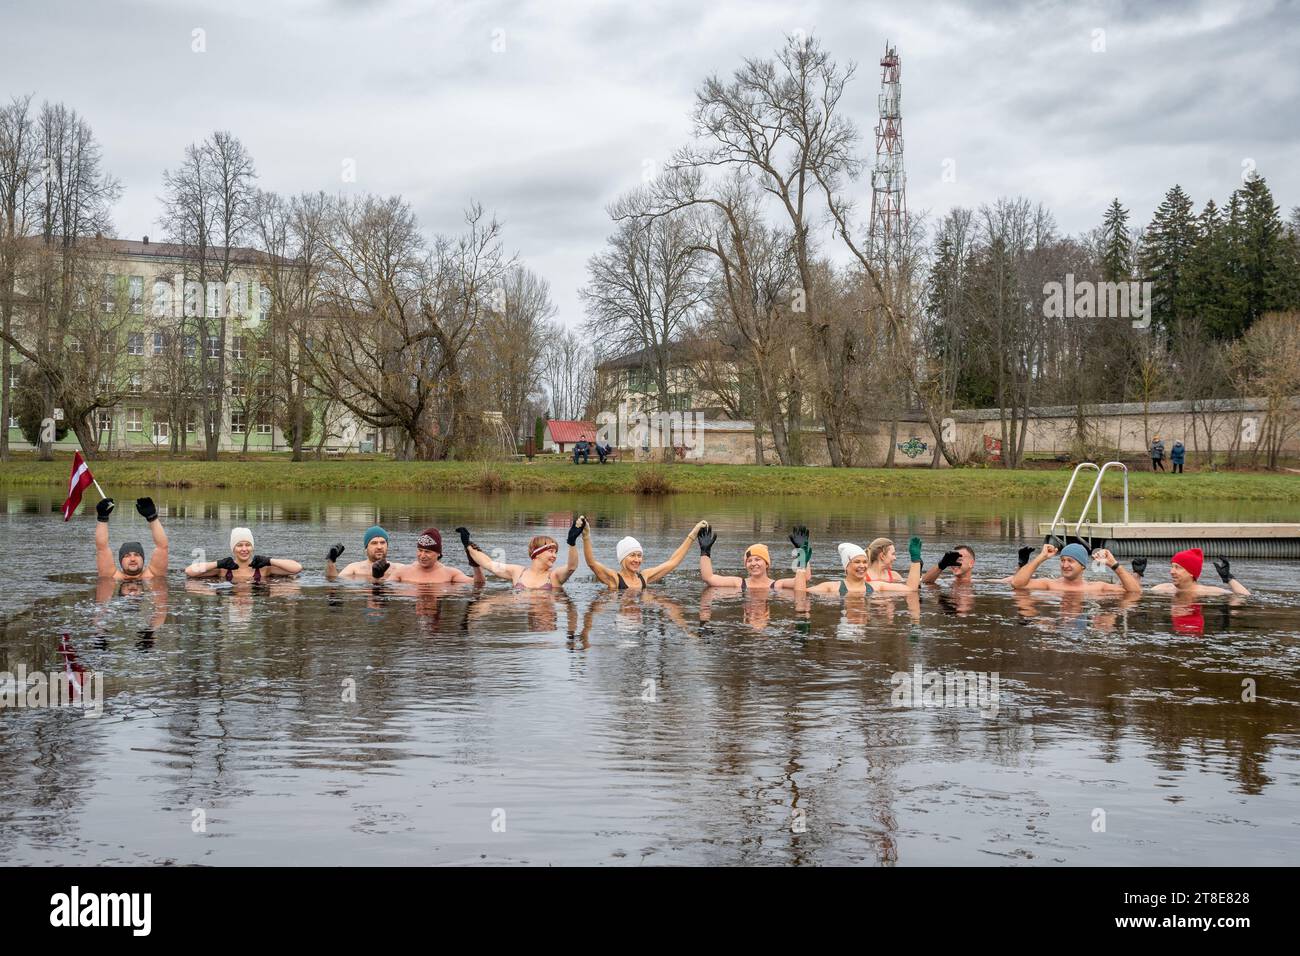 Groupe de personnes se baignant sur la glace ensemble dans l'eau froide d'un lac à Preili, Lettonie. Méthode Wim Hof, thérapie par le froid, techniques respiratoires, yoga Banque D'Images